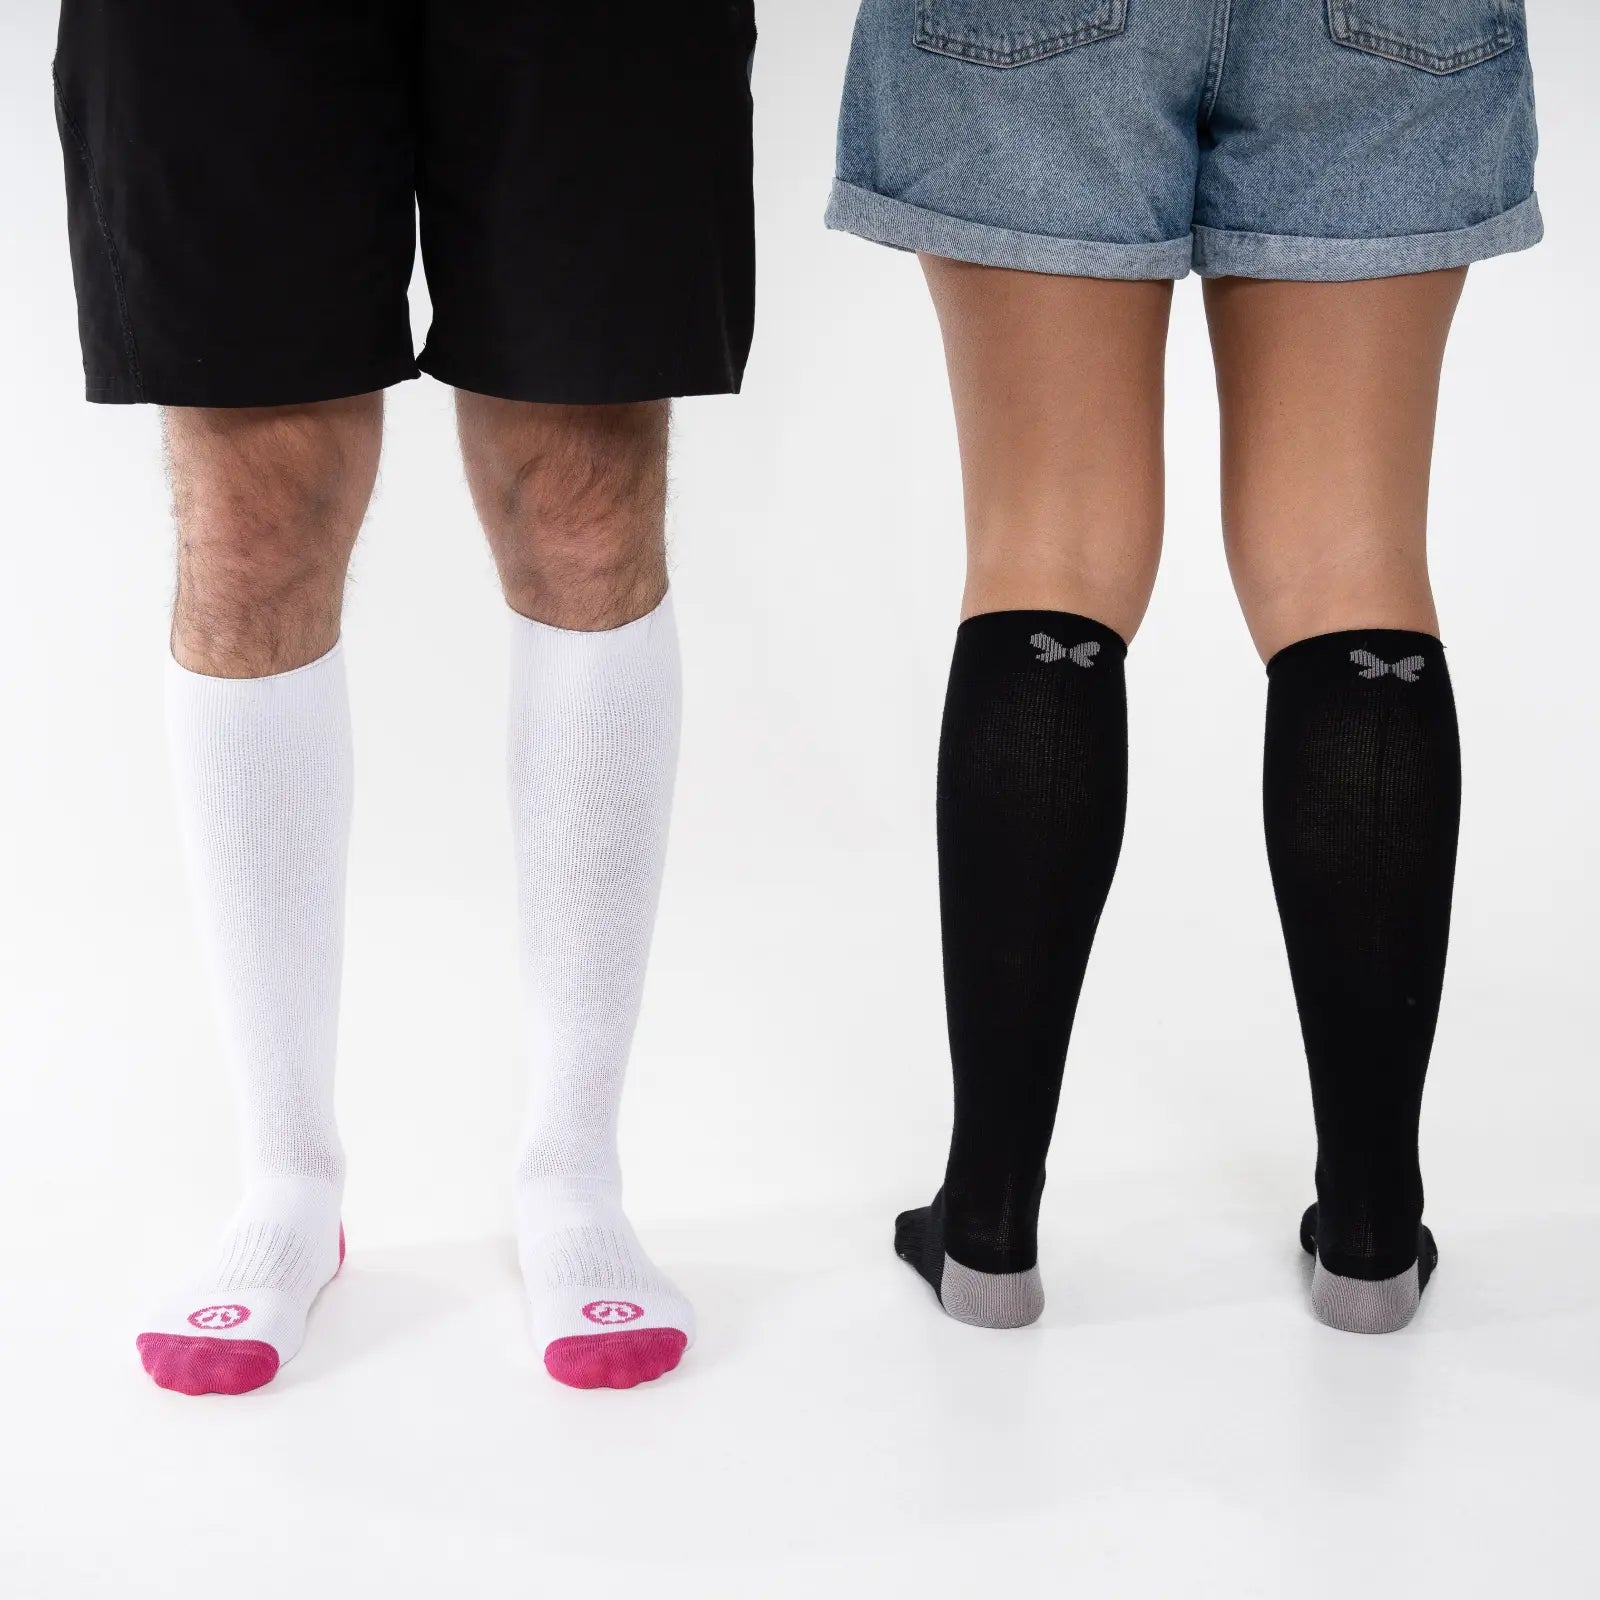 Medias de Compresion Mujer Hombre Calcetines Compresivos para Deporte Knee  High